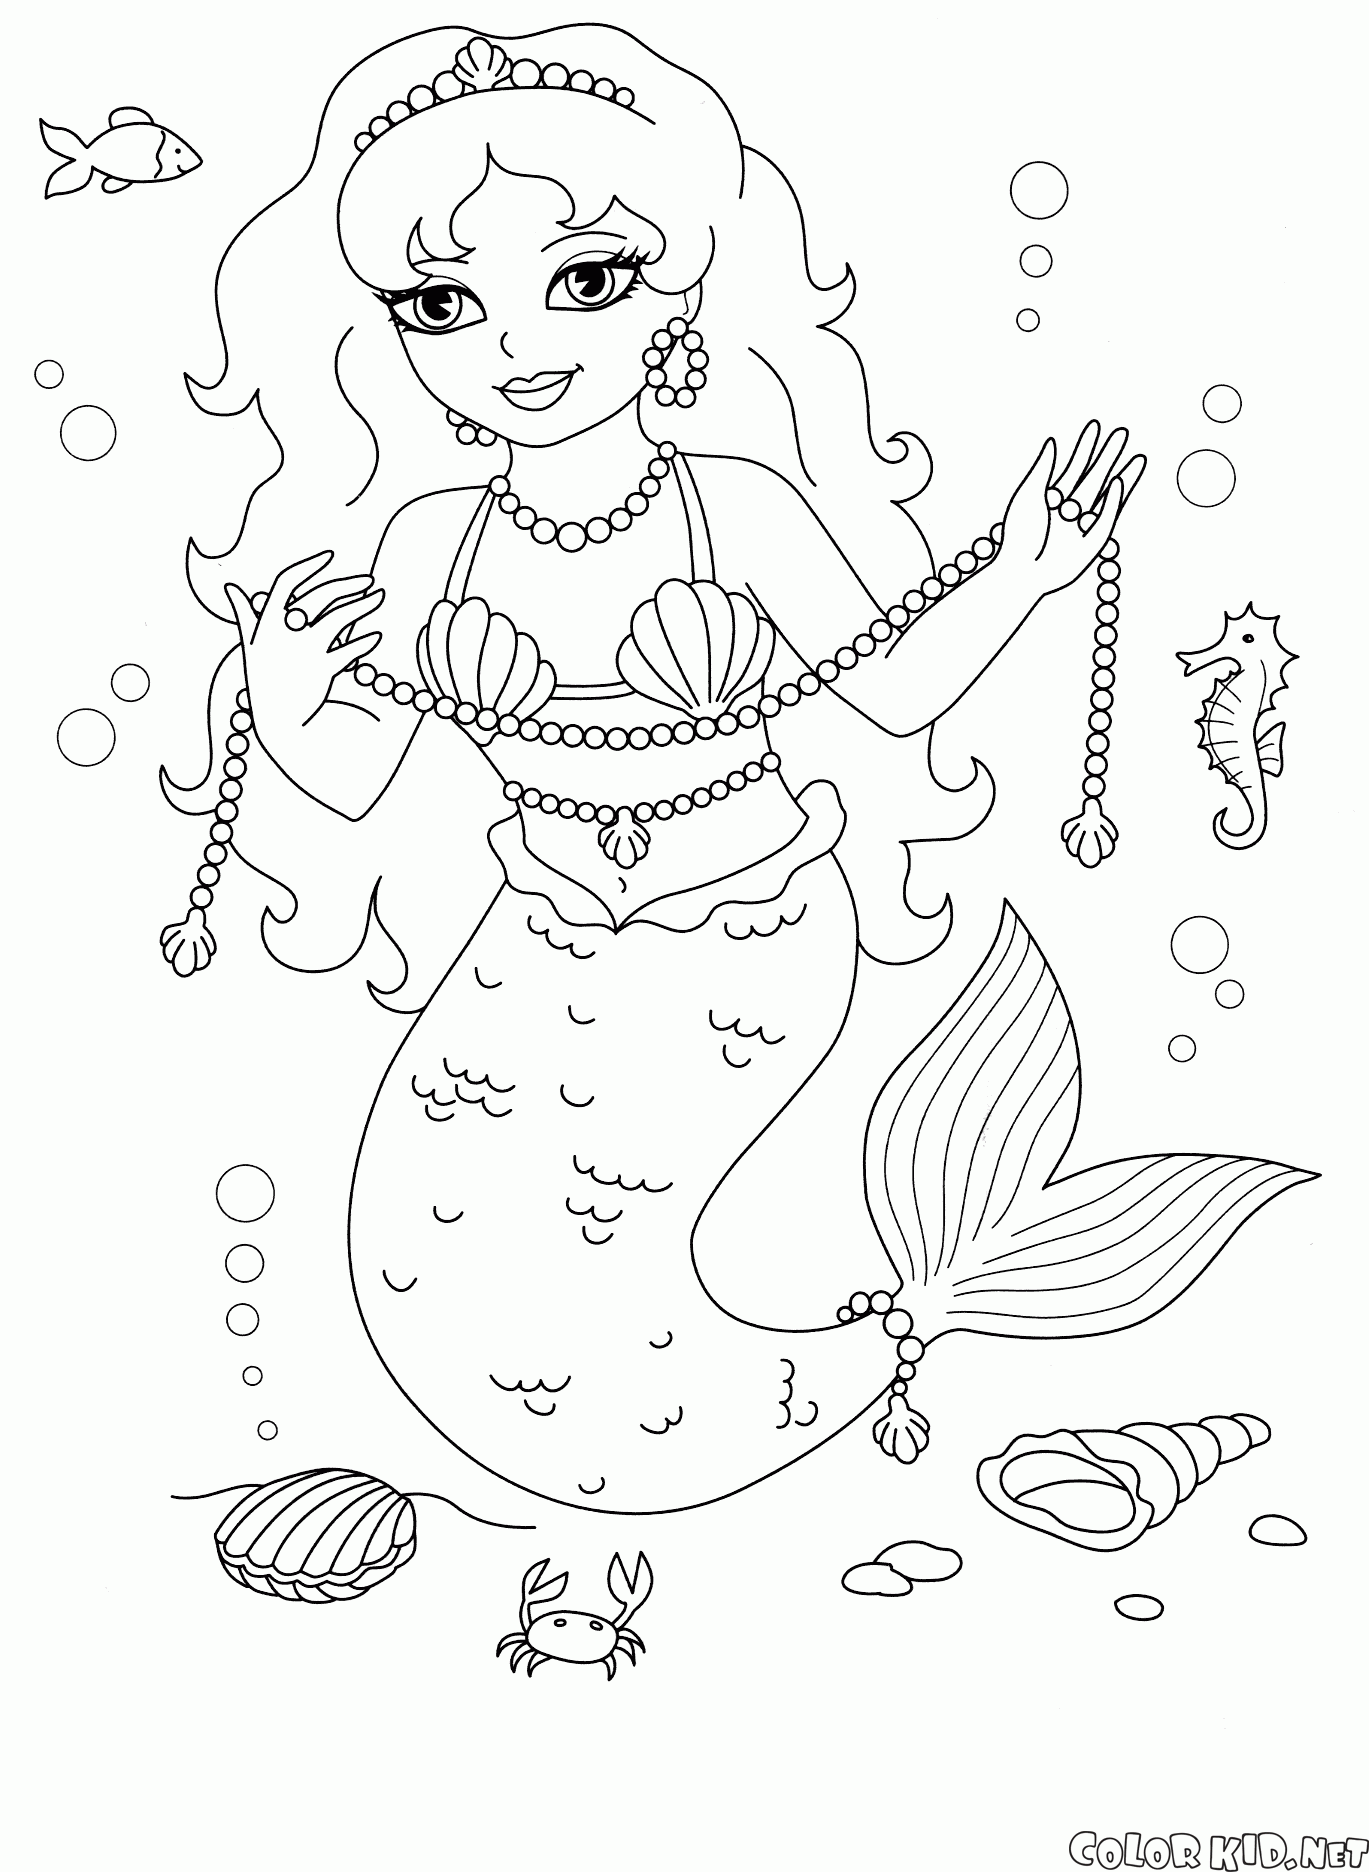 Mermaid on land